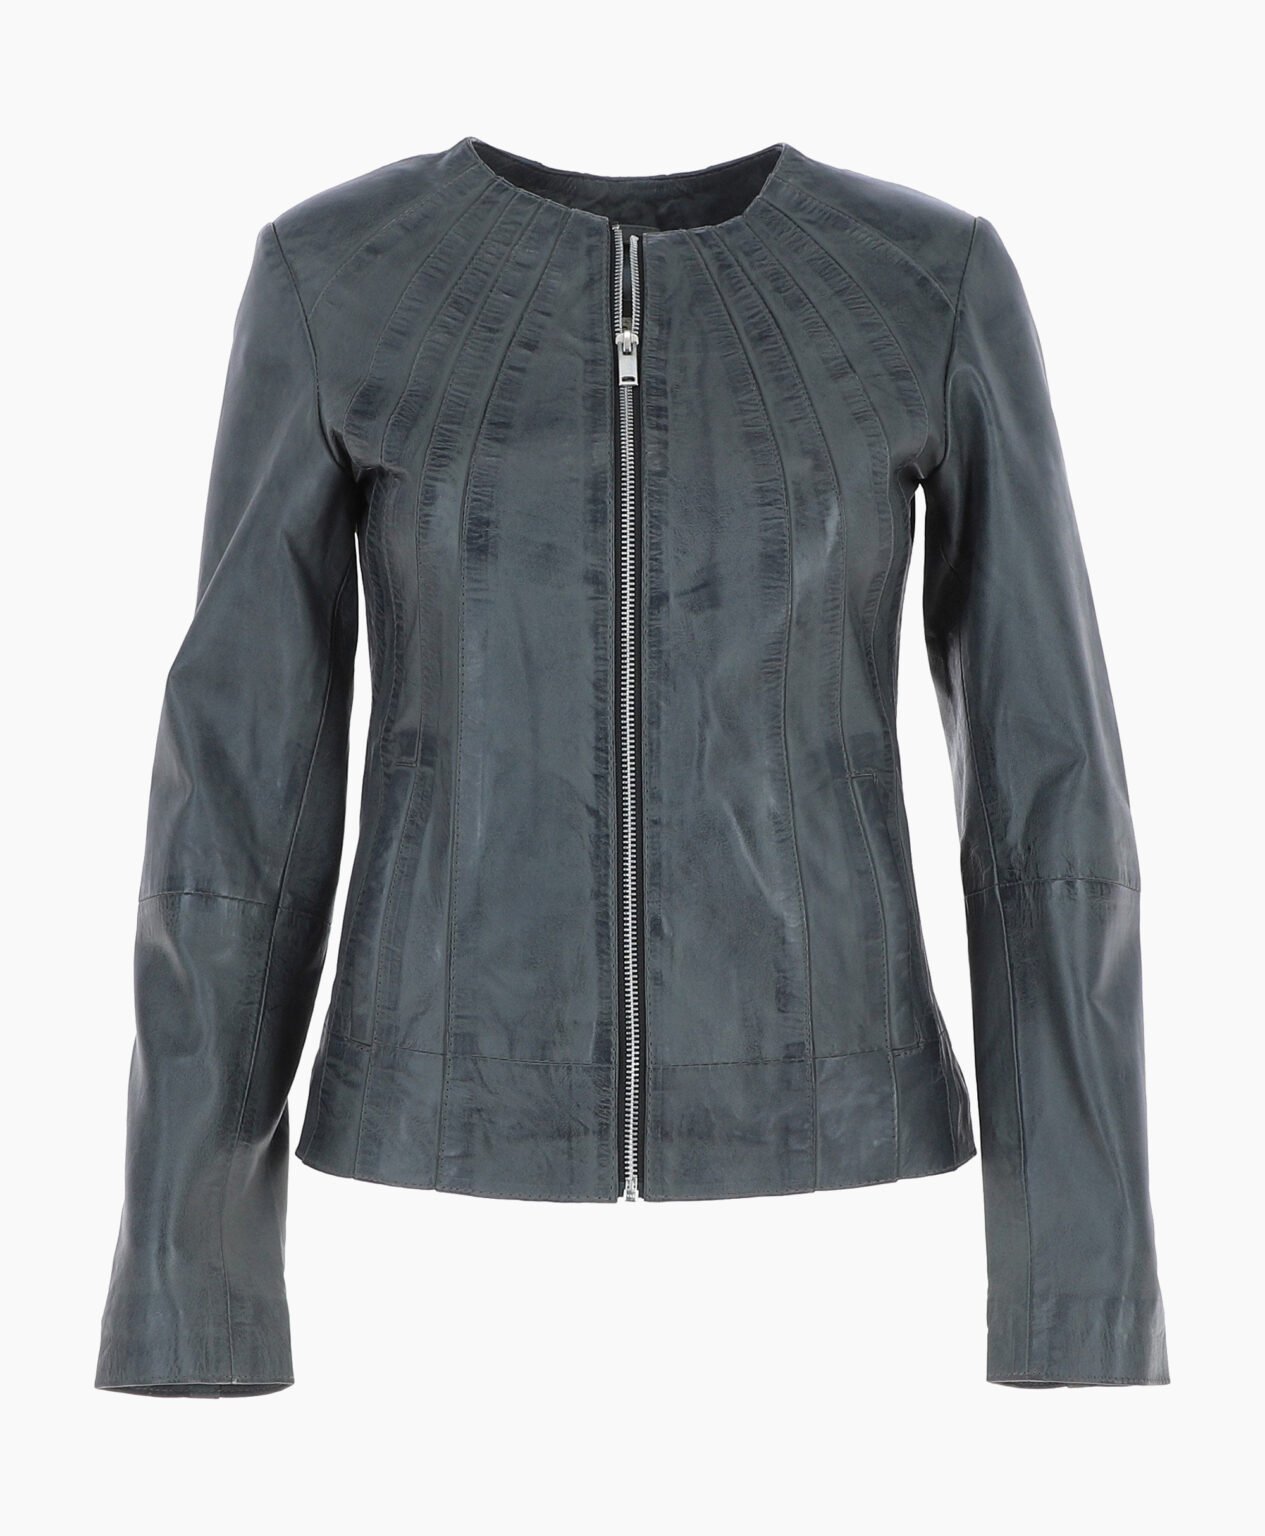 vogue-jacket-leather-jacket-gray-cordova-image-200